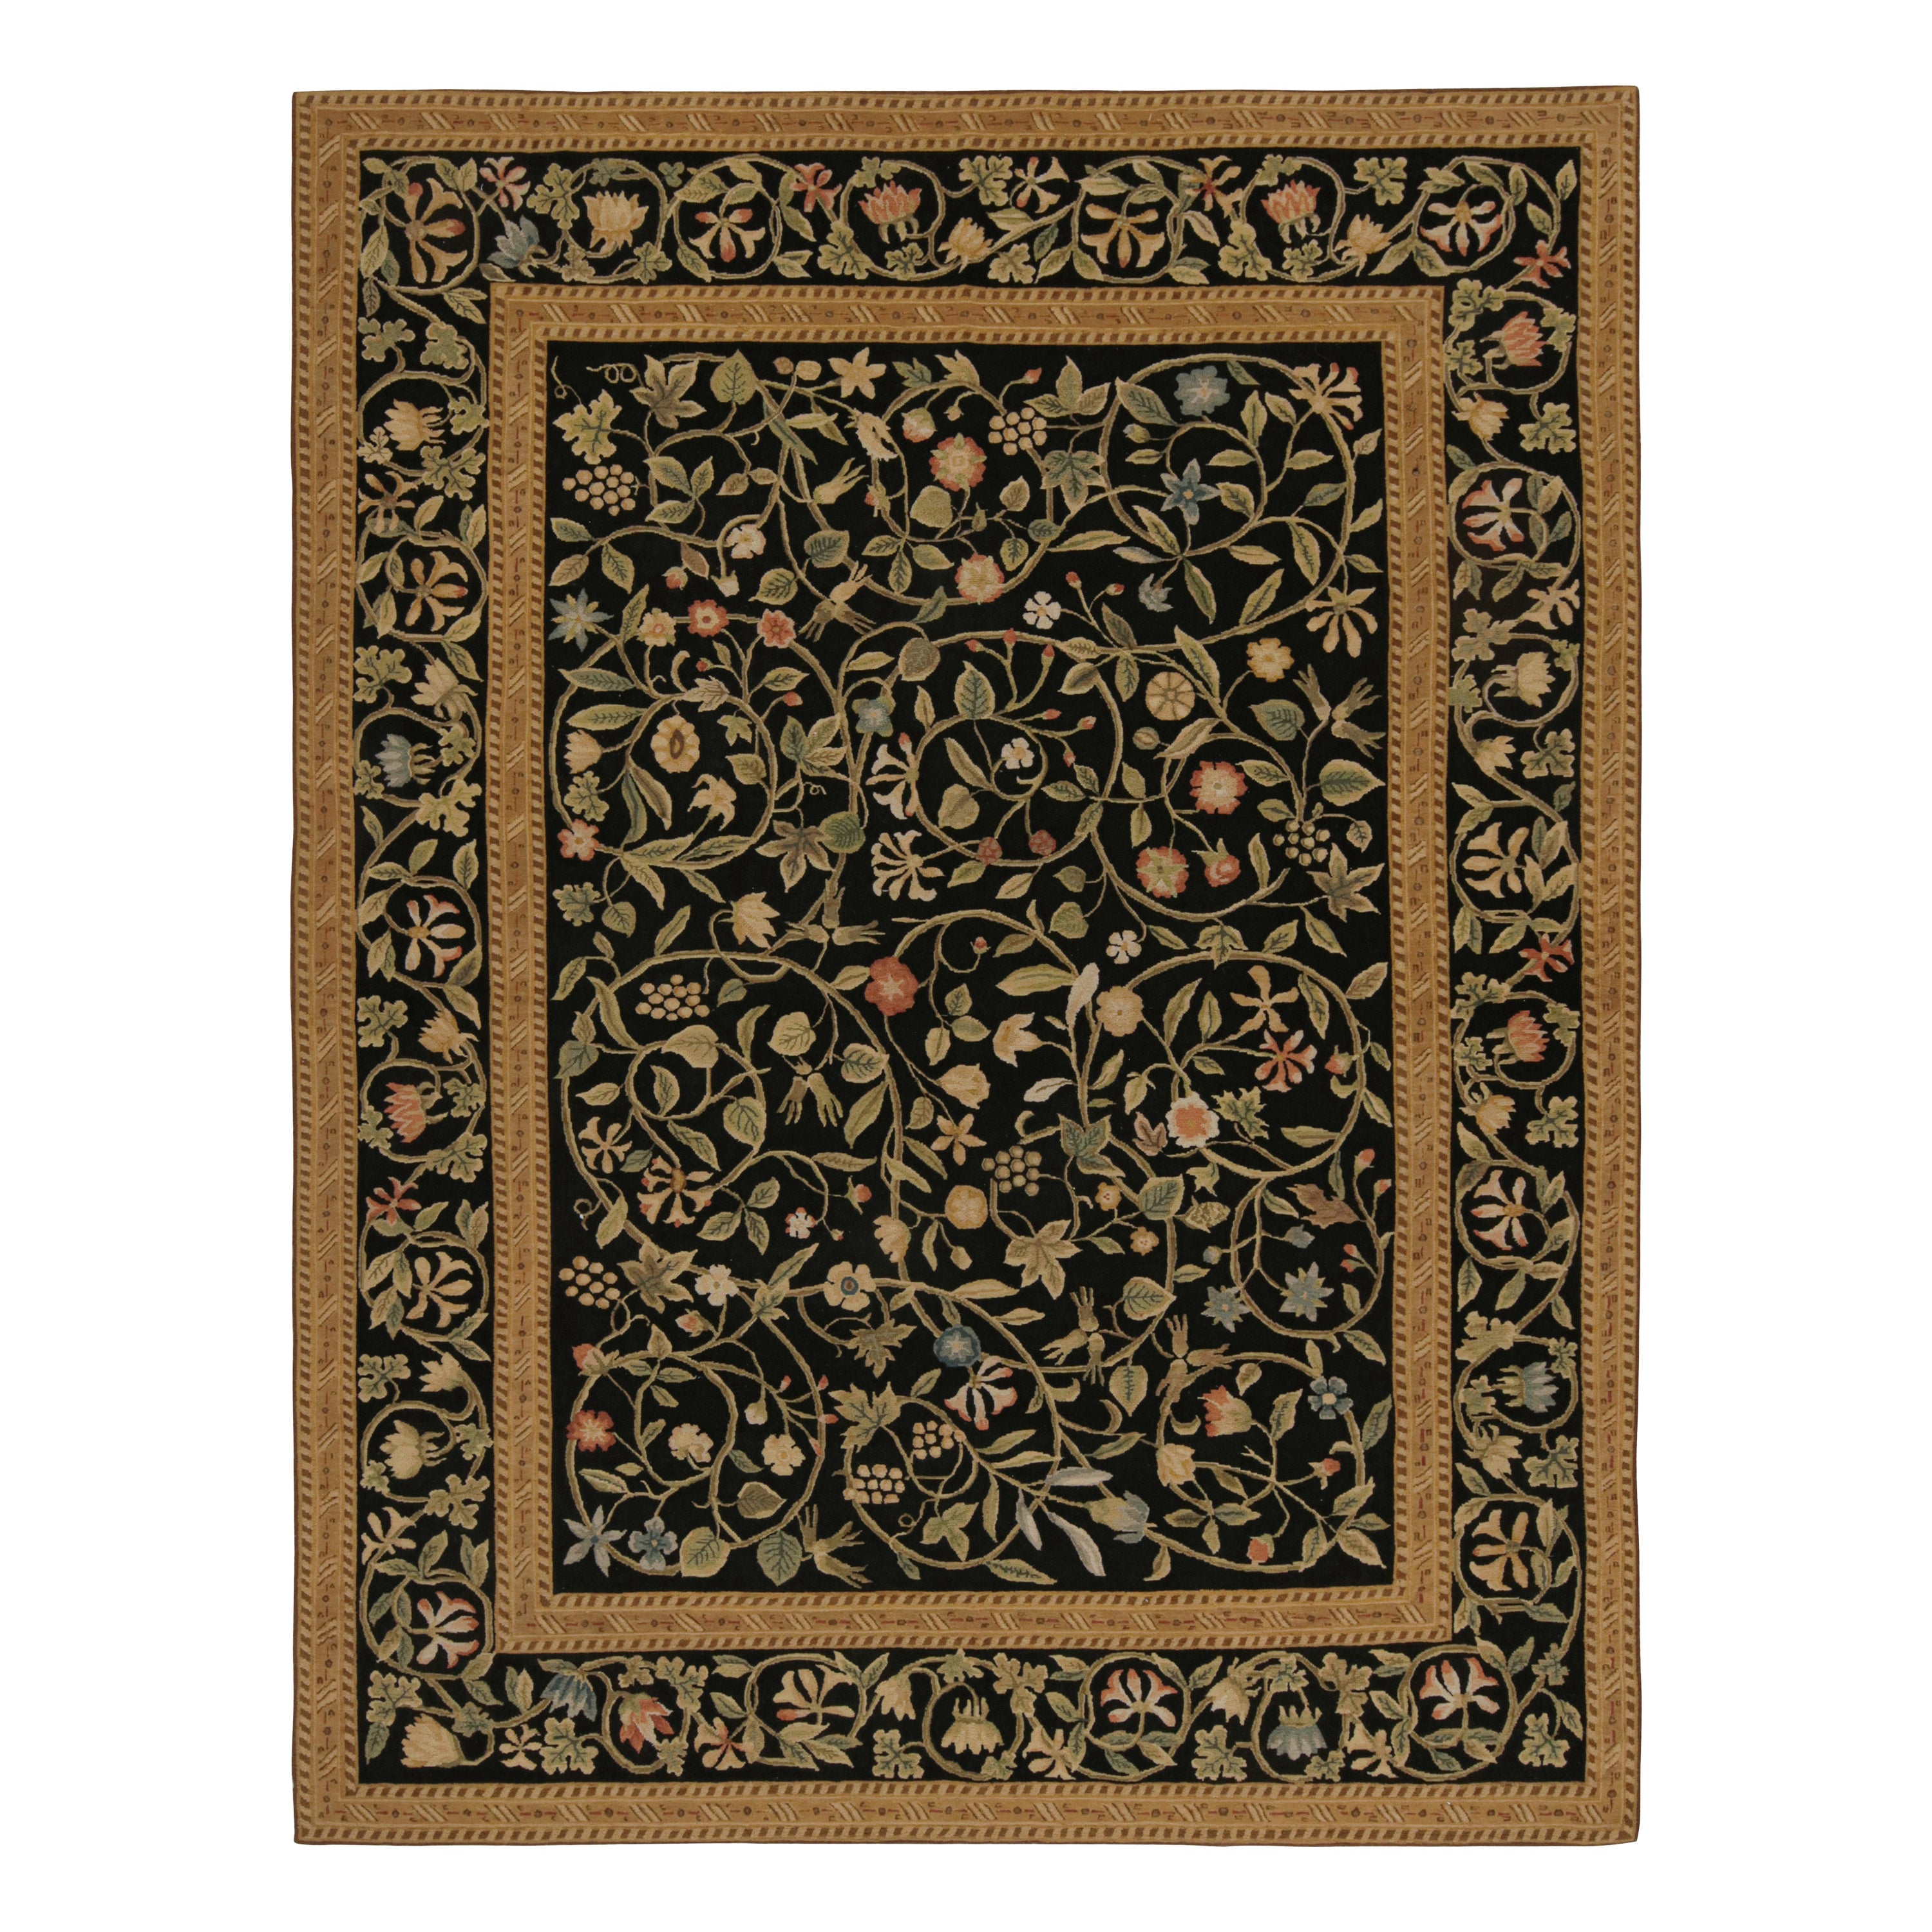 Rug & Kilim's Teppich im europäischen Stil in Schwarz mit beigefarbenen und grünen Blumenmustern